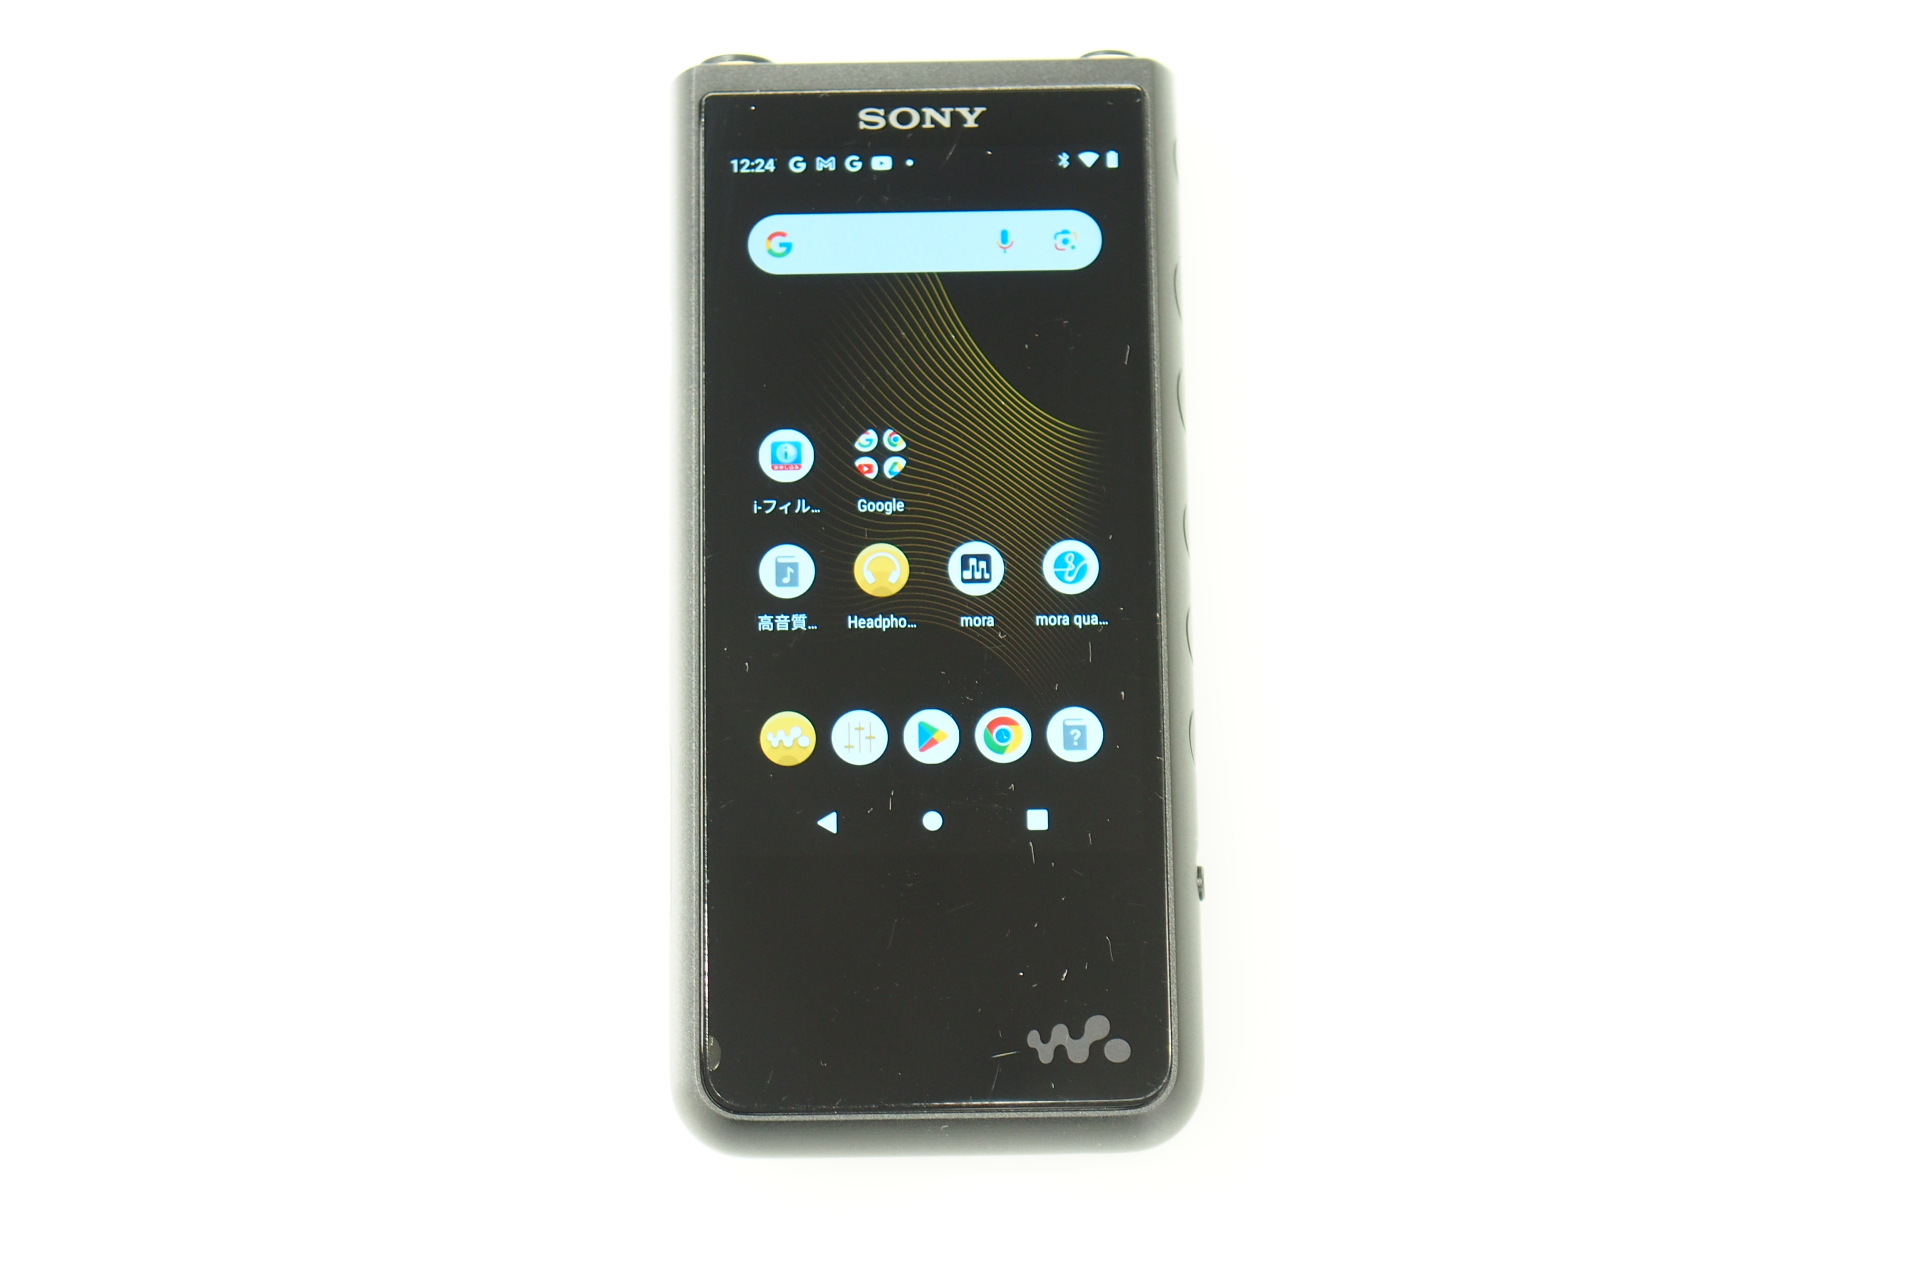 SONY NW-ZX507 WALKMAN 未使用品